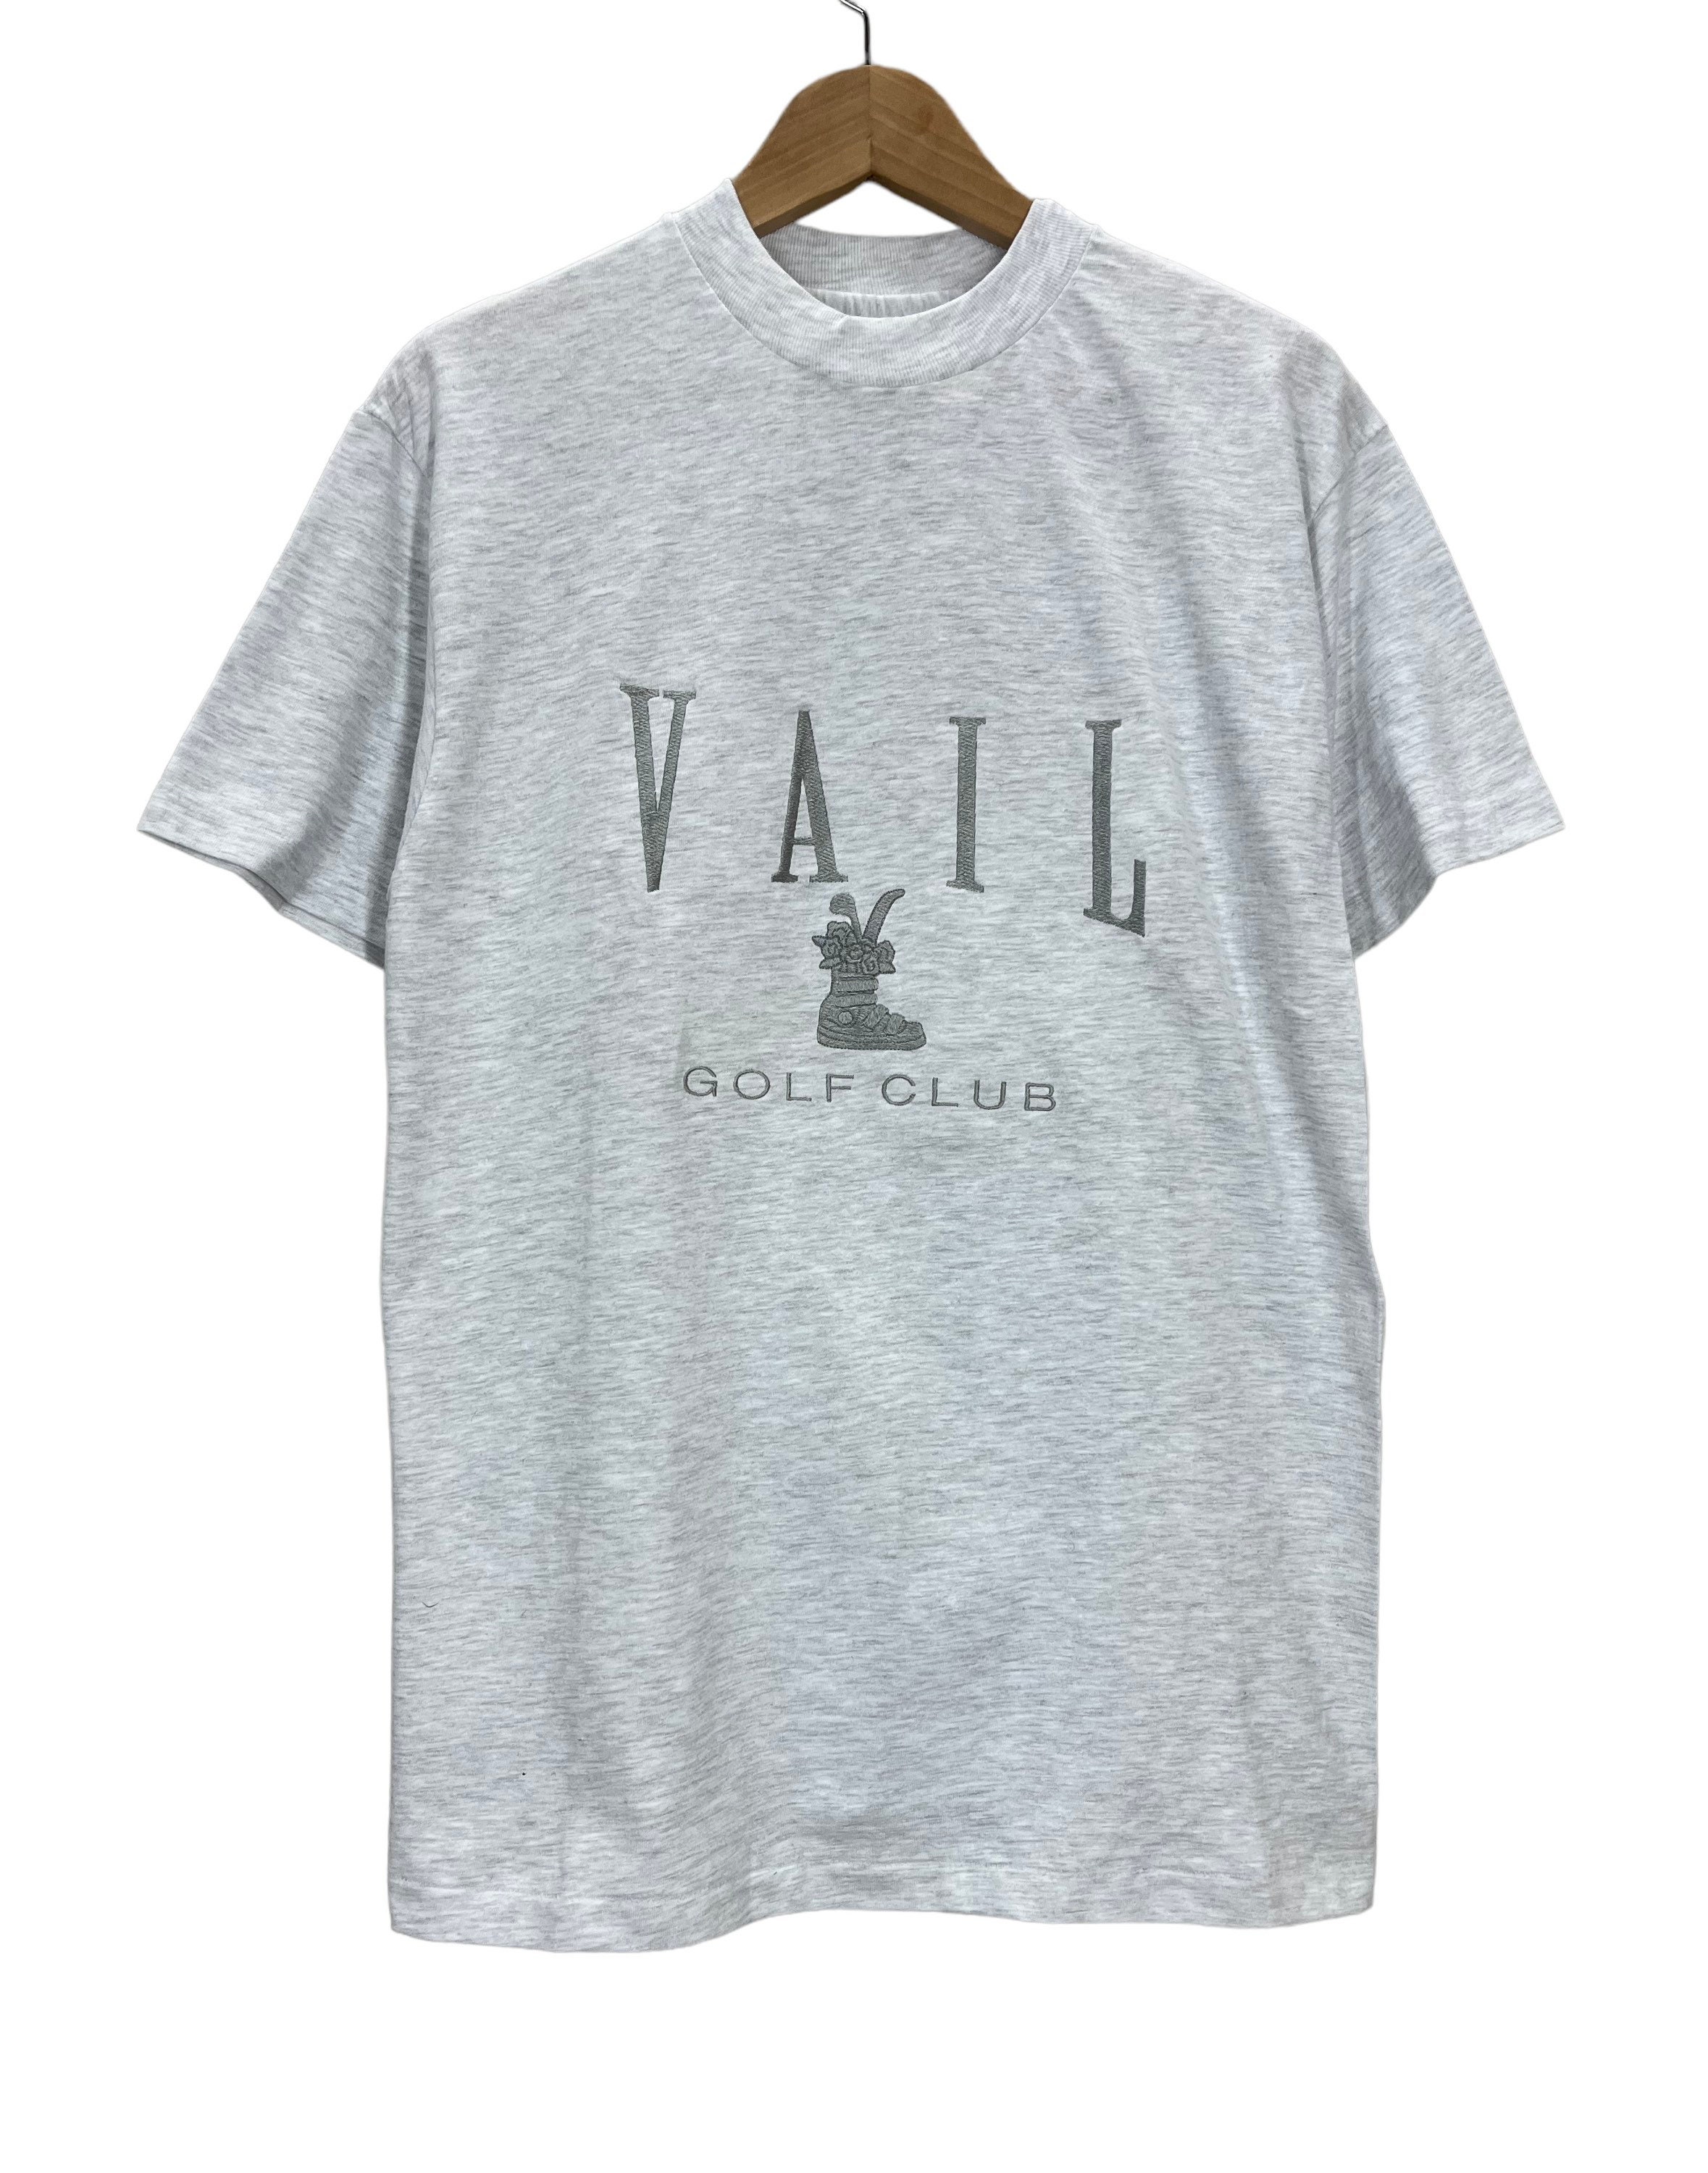 Vintage Vail Tshirt - Etsy